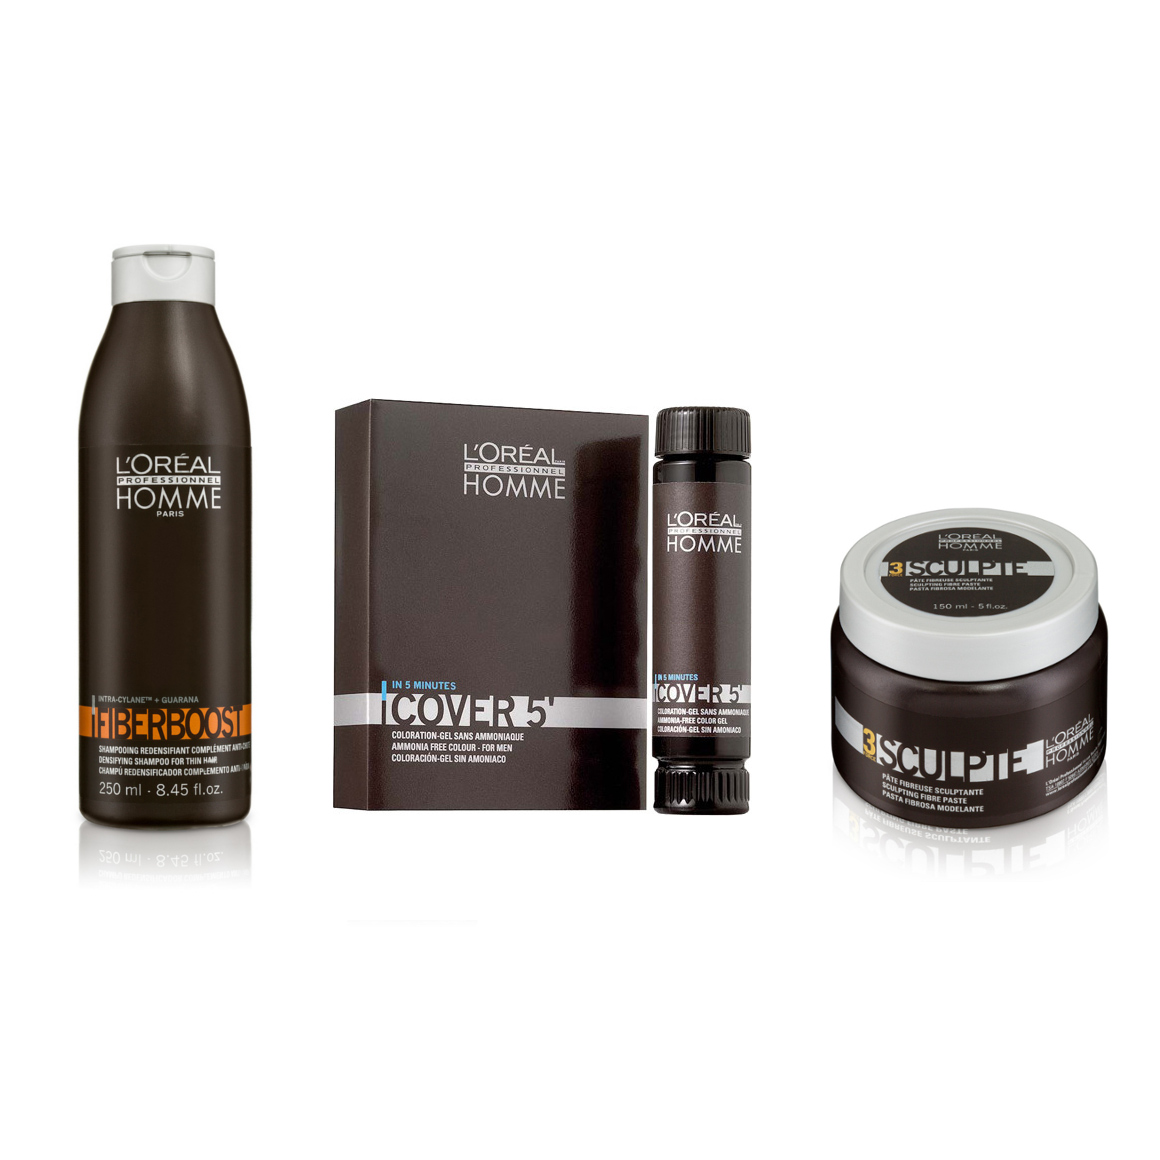 Homme | Zestaw do włosów dla mężczyzn: szampon nadający objętość 250ml + żel do koloryzacji włosów nr 5 50ml + włóknista pasta rzeźbiąca 150ml